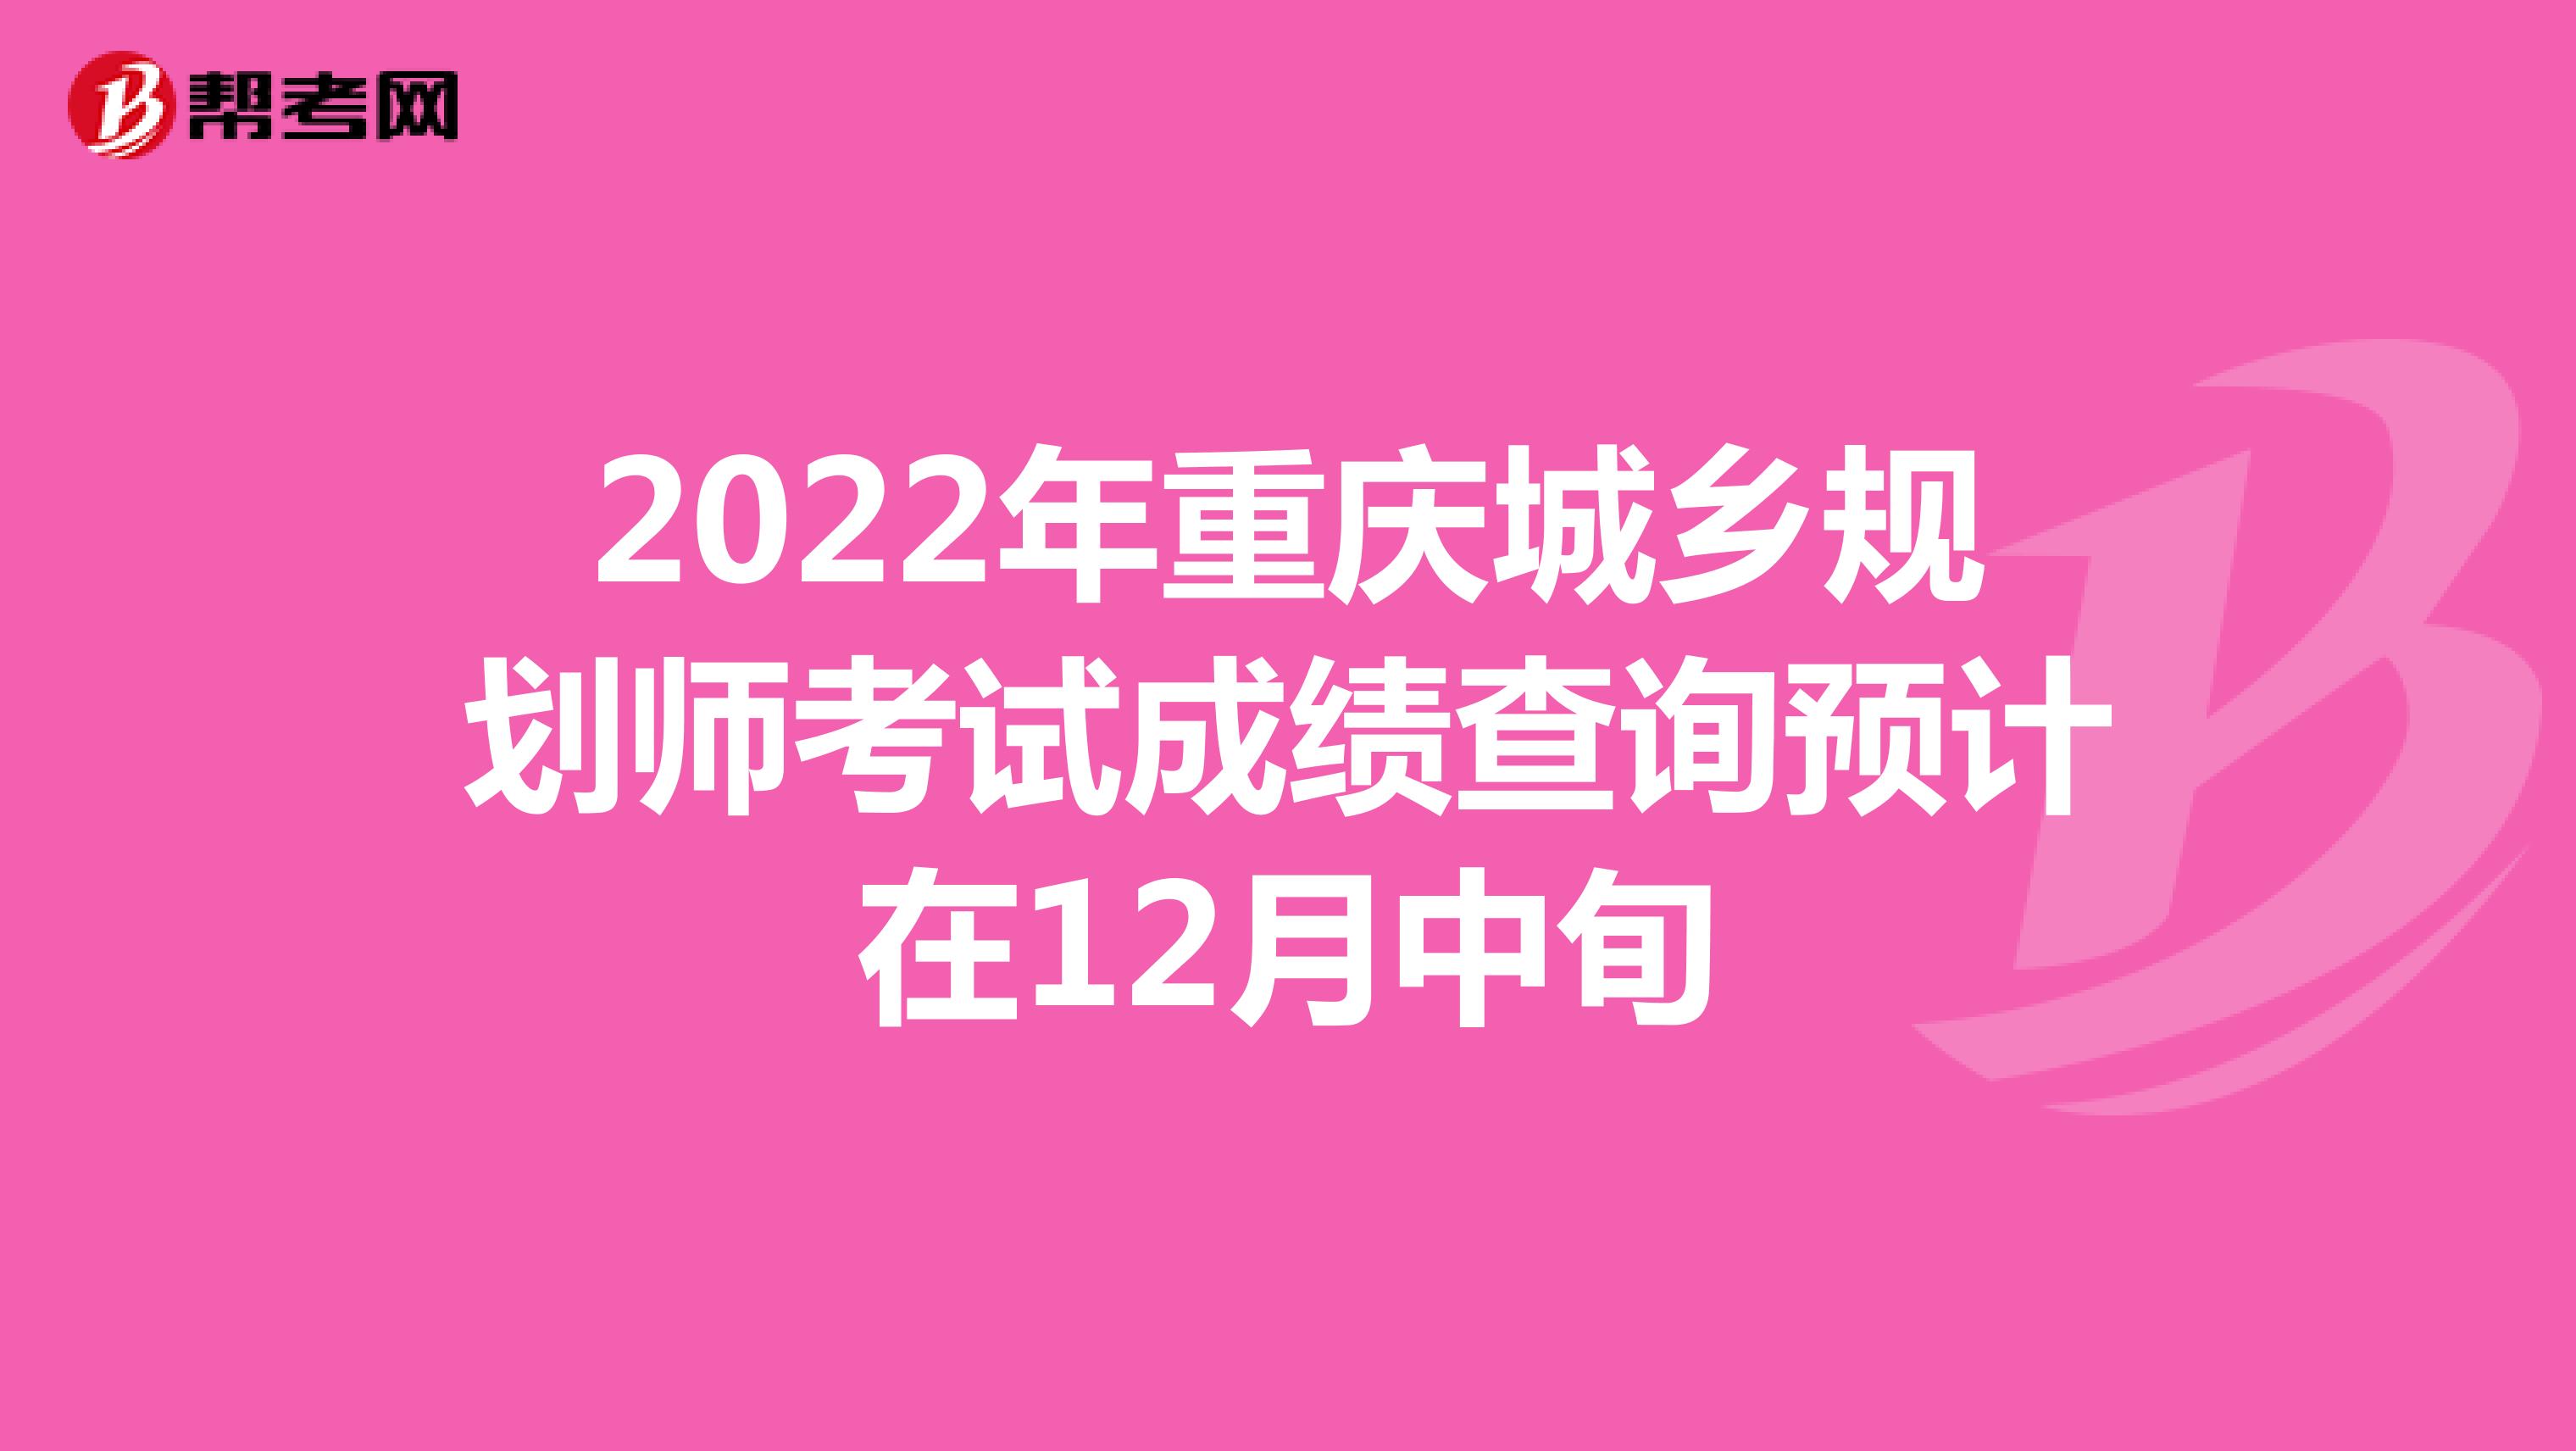 2022年重庆城乡规划师考试成绩查询预计在12月中旬